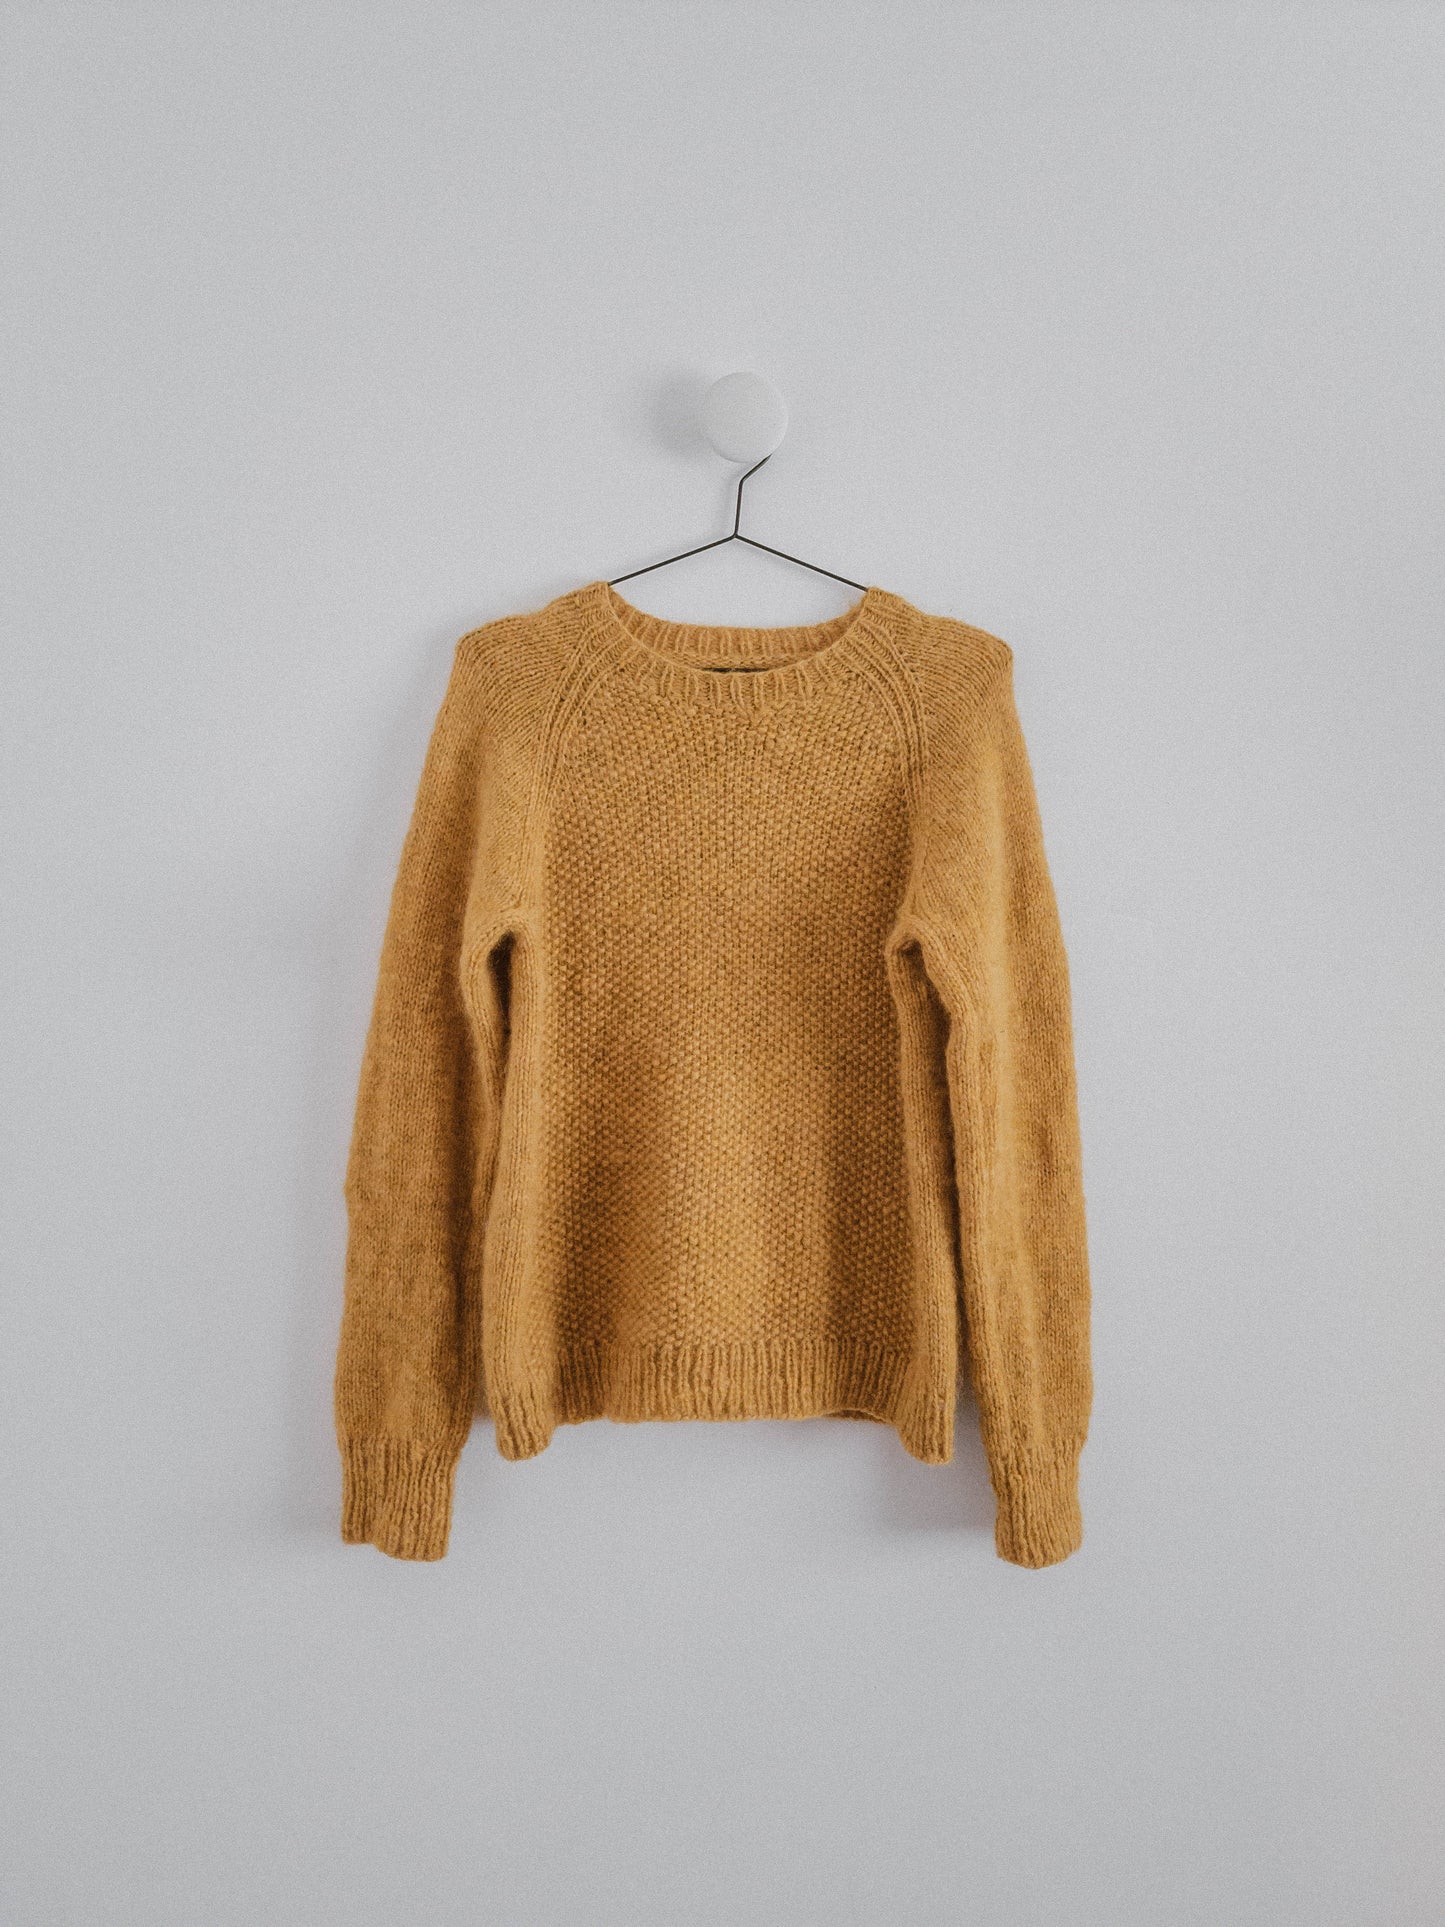 Before Fall Sweater - Knitting Pattern